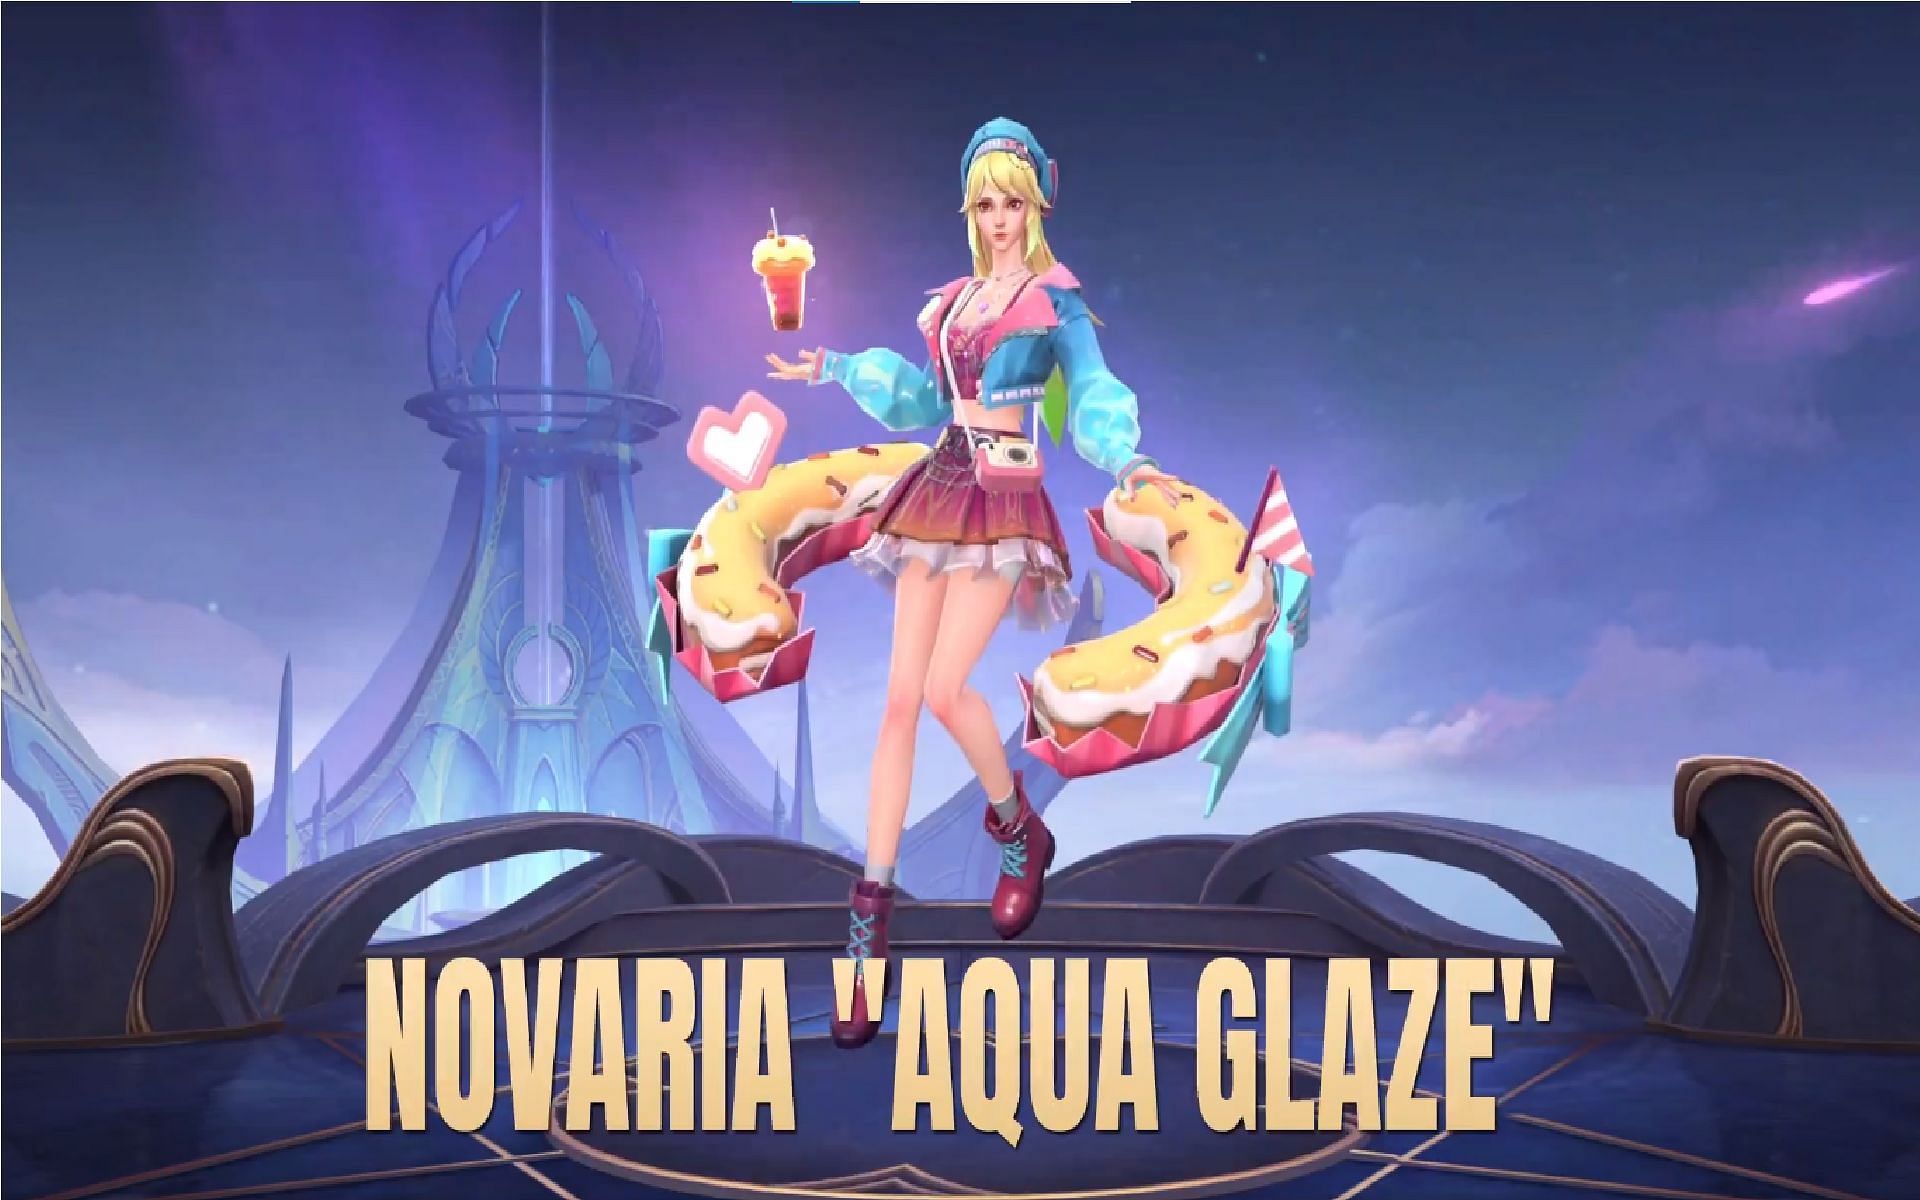 Novaria received her 